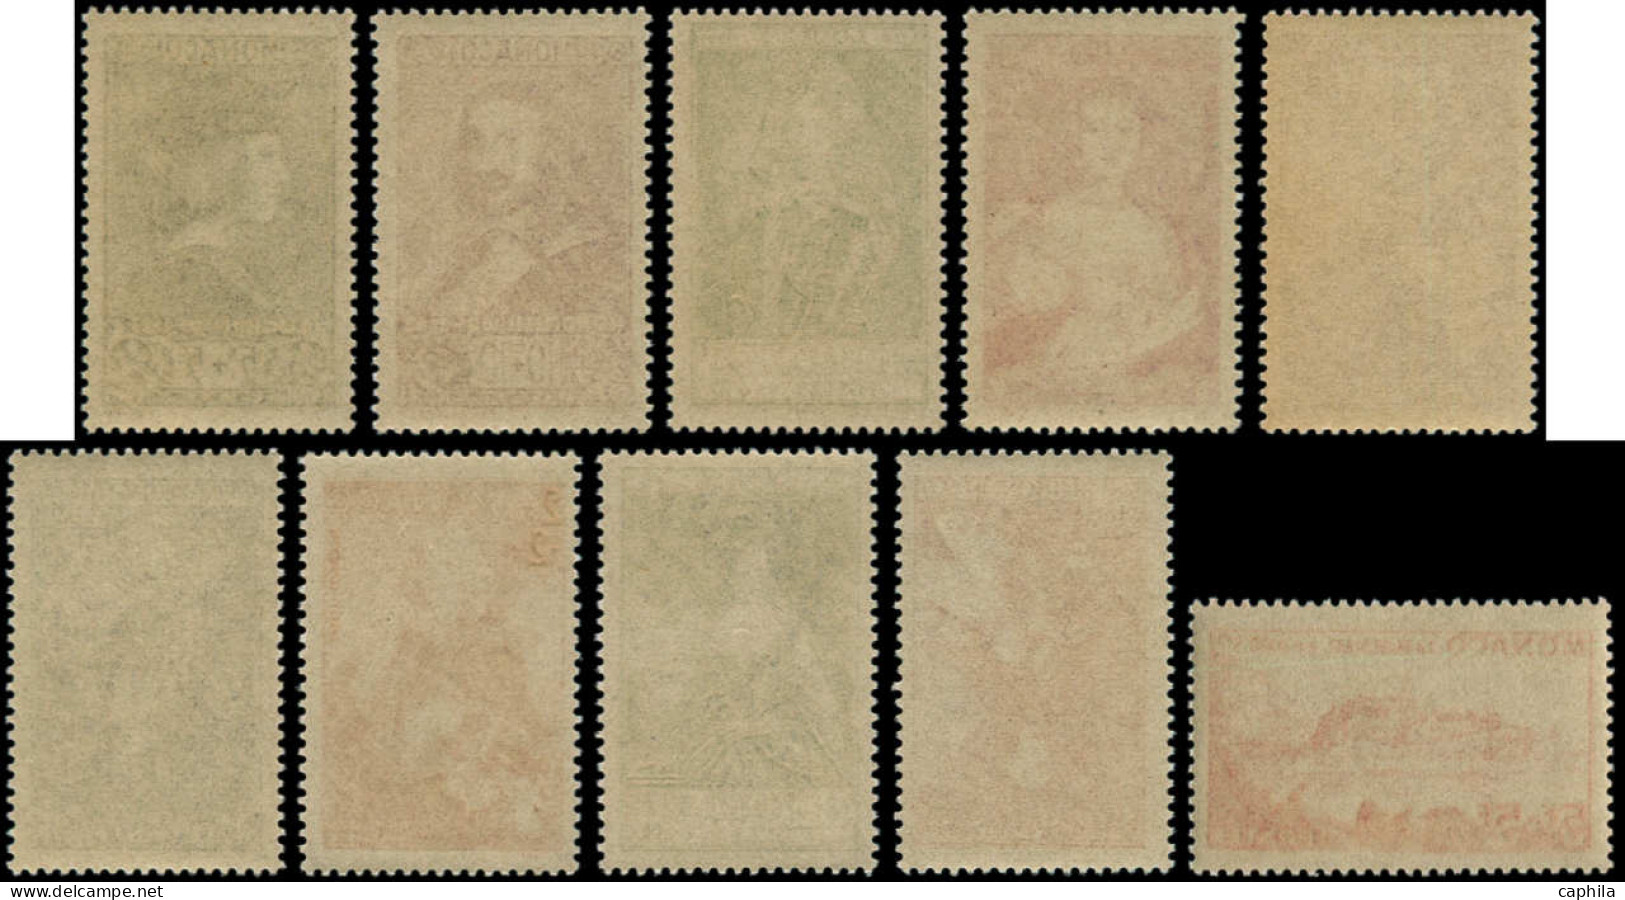 ** MONACO - Poste - 185/94, Princes Et Princesses, Complet 10 Valeurs - Unused Stamps